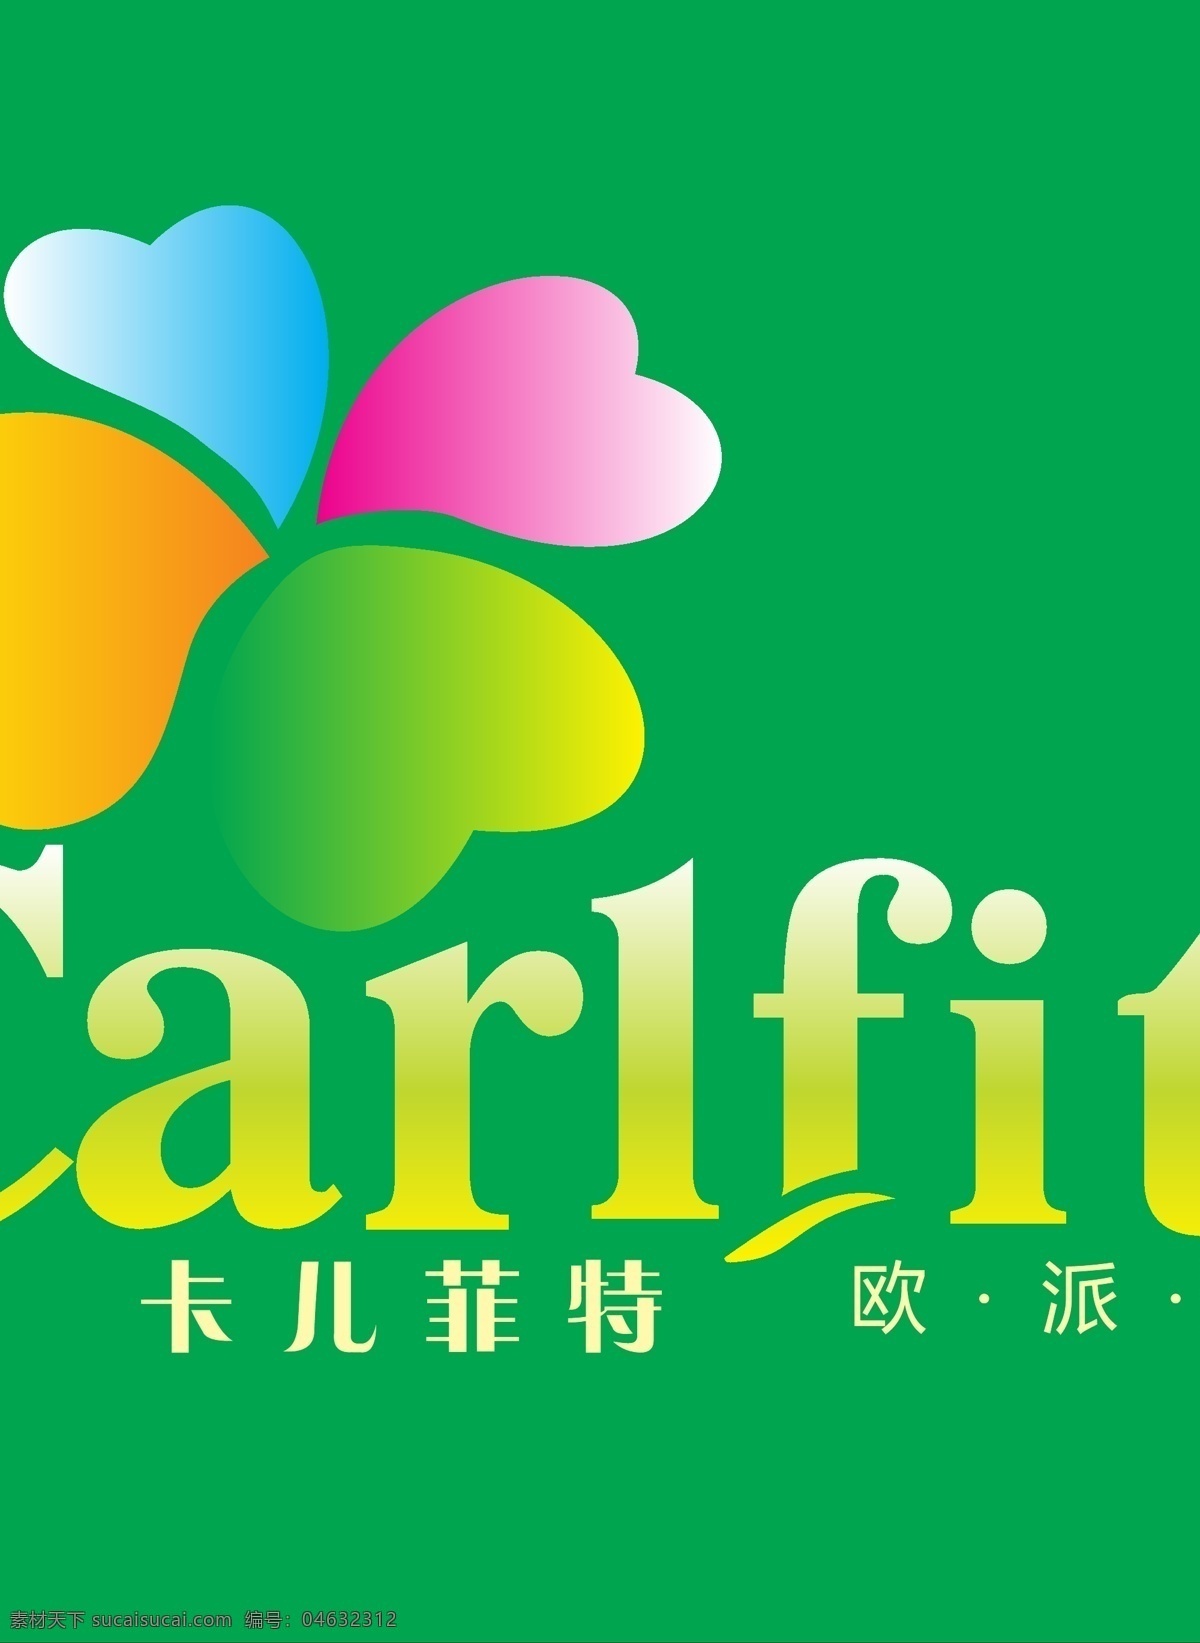 卡儿菲特标志 卡儿菲特标 欧派童装 carlfit 彩色花瓣 矢量 卡儿菲特 企业 logo 标志 标识标志图标